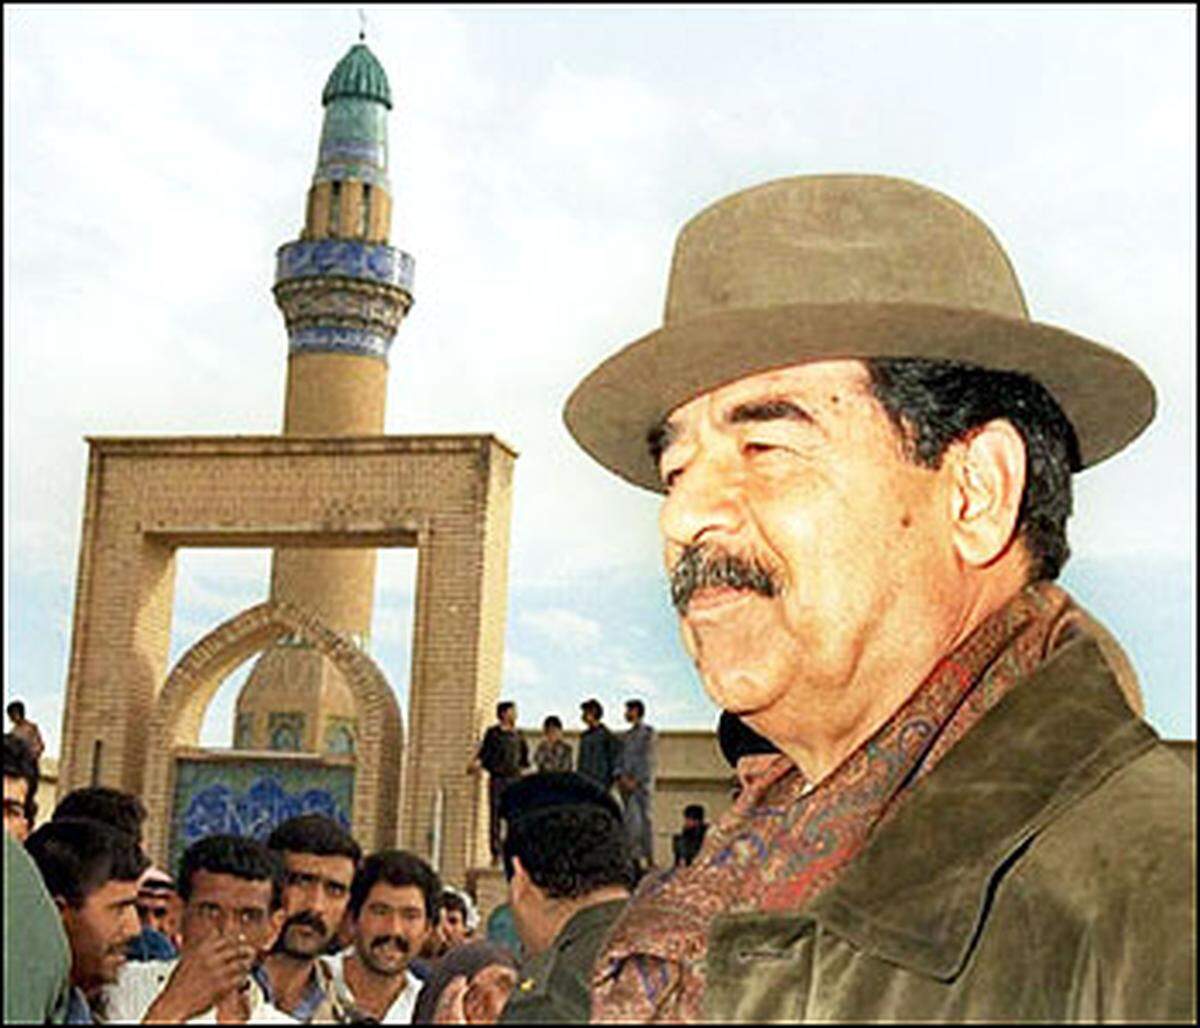 Doch Saddam hatte damals vielleicht auch kaum eine Wahl. Die US-Regierung ließ sich nicht auf Verhandlungen ein, und nur ein kleiner Teil seines Volkes wollte für das Überleben des ungeliebten Regimes in den Krieg ziehen. Im Exil hätte Saddam Hussein außerdem ständig Angst haben müssen, dass ihn eines Tages einer der hunderttausenden Iraker, die eine offene Rechnung mit ihm hatten, umbringen würde.